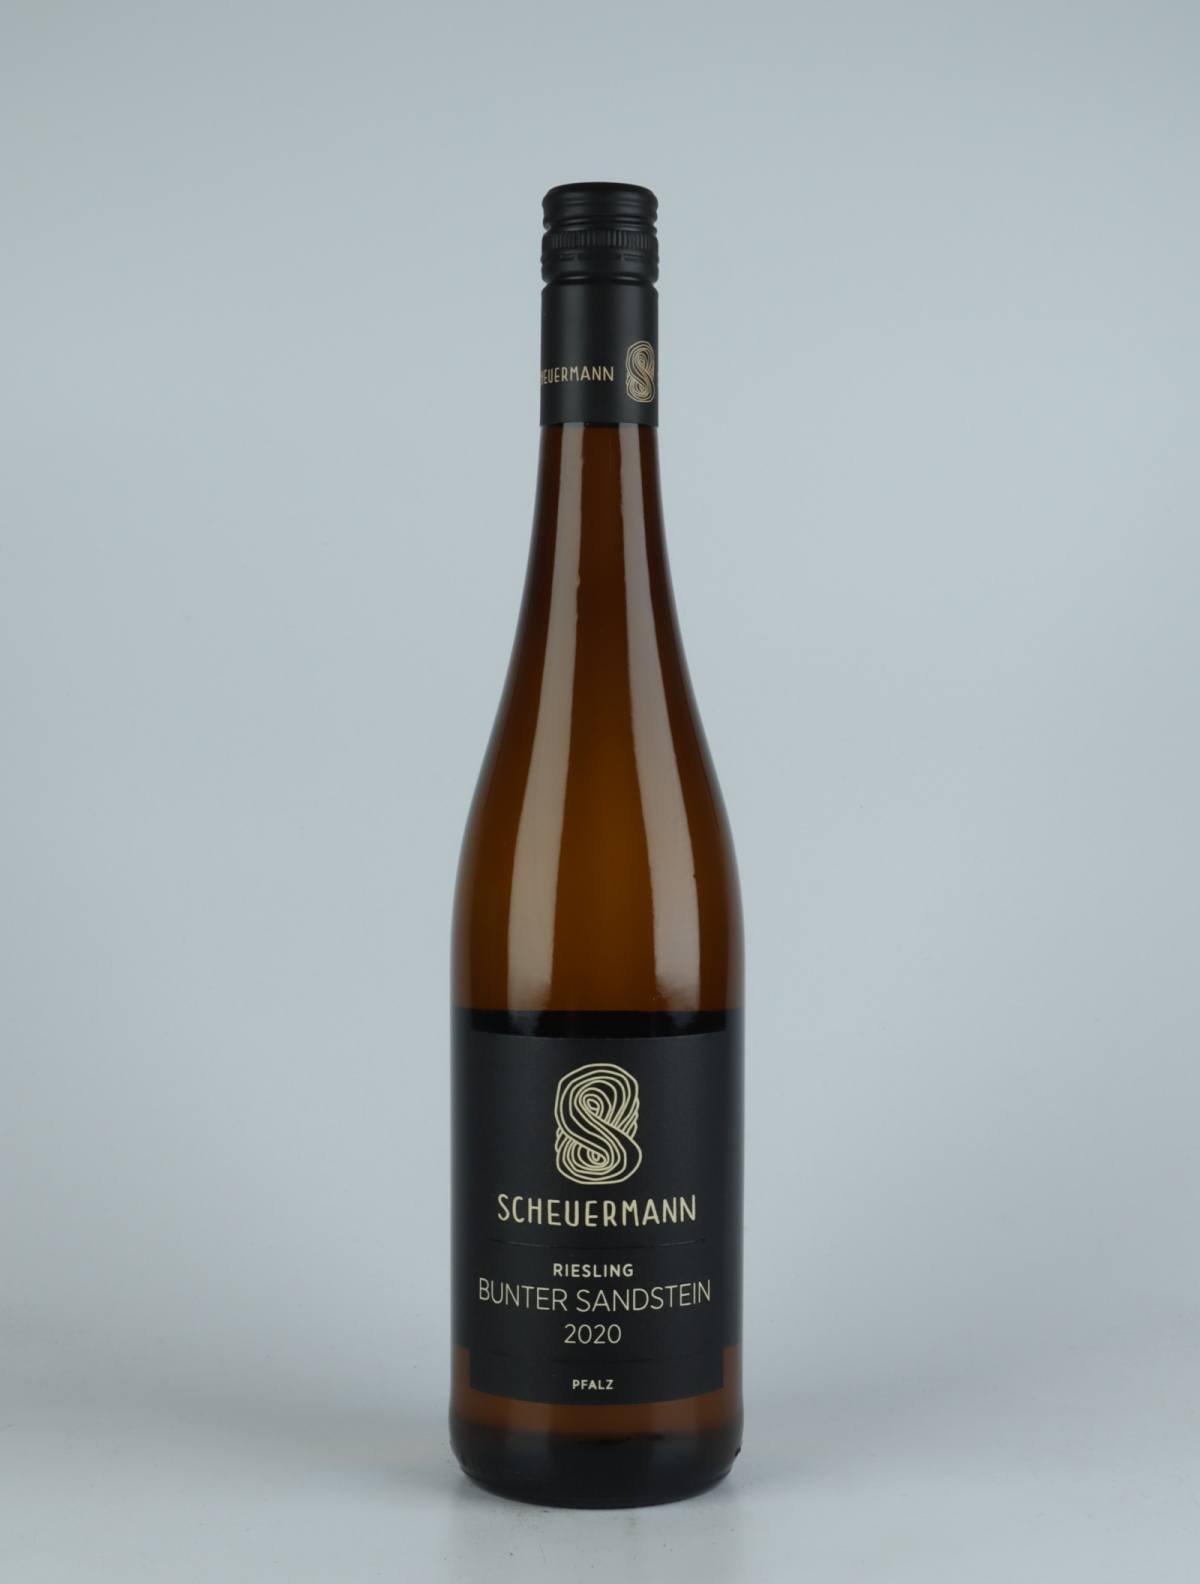 A bottle 2020 Riesling Bunter Sandstein White wine from Weingut Scheuermann, Pfalz in Germany